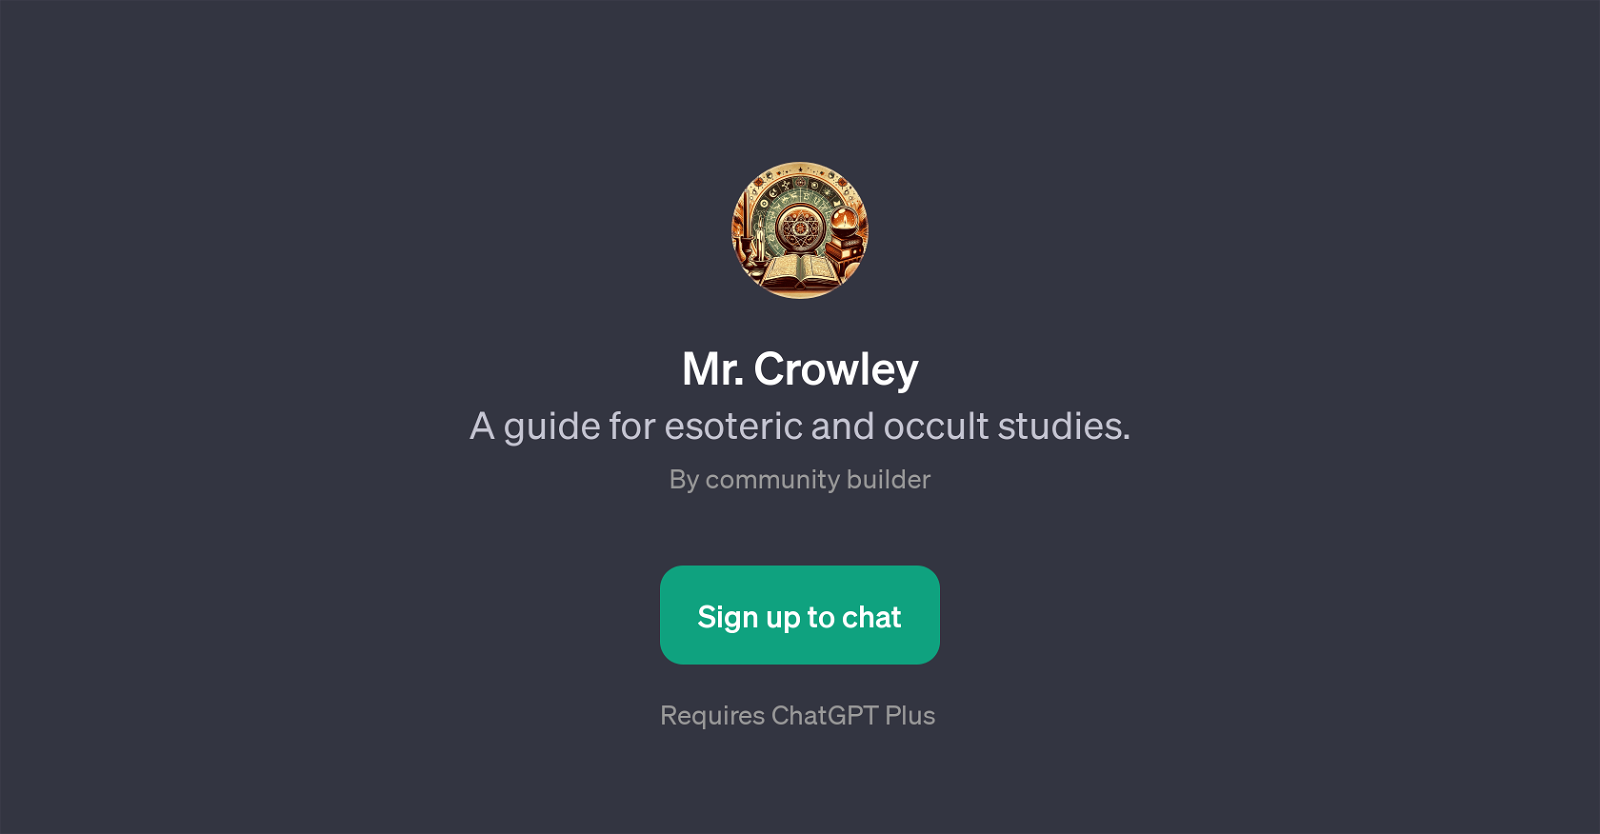 Mr. Crowley website